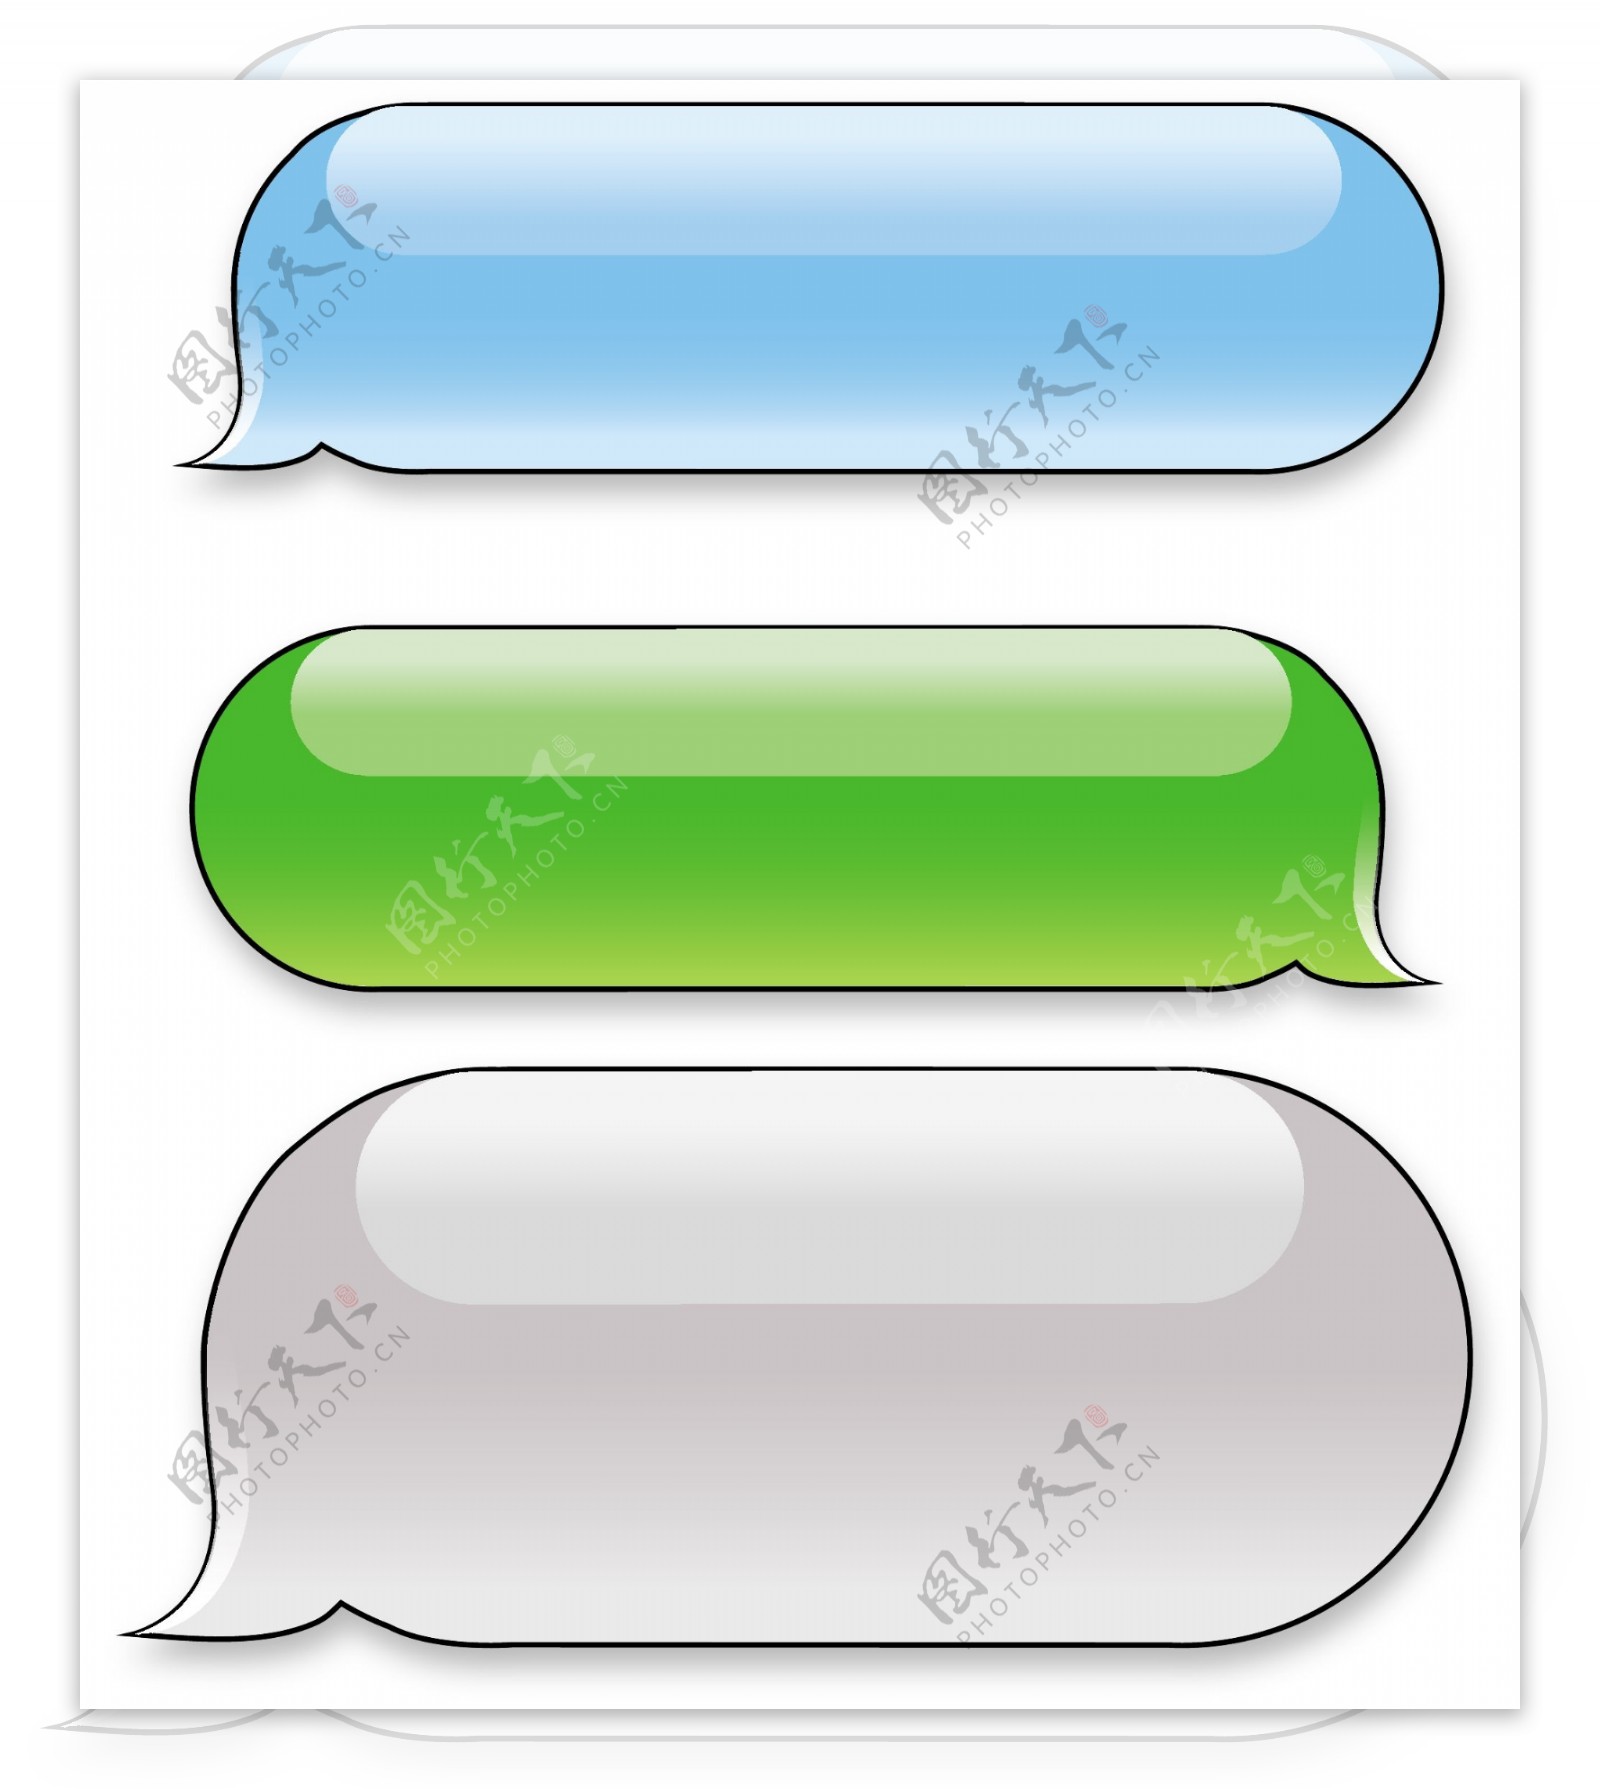 iphone短信对话框图片